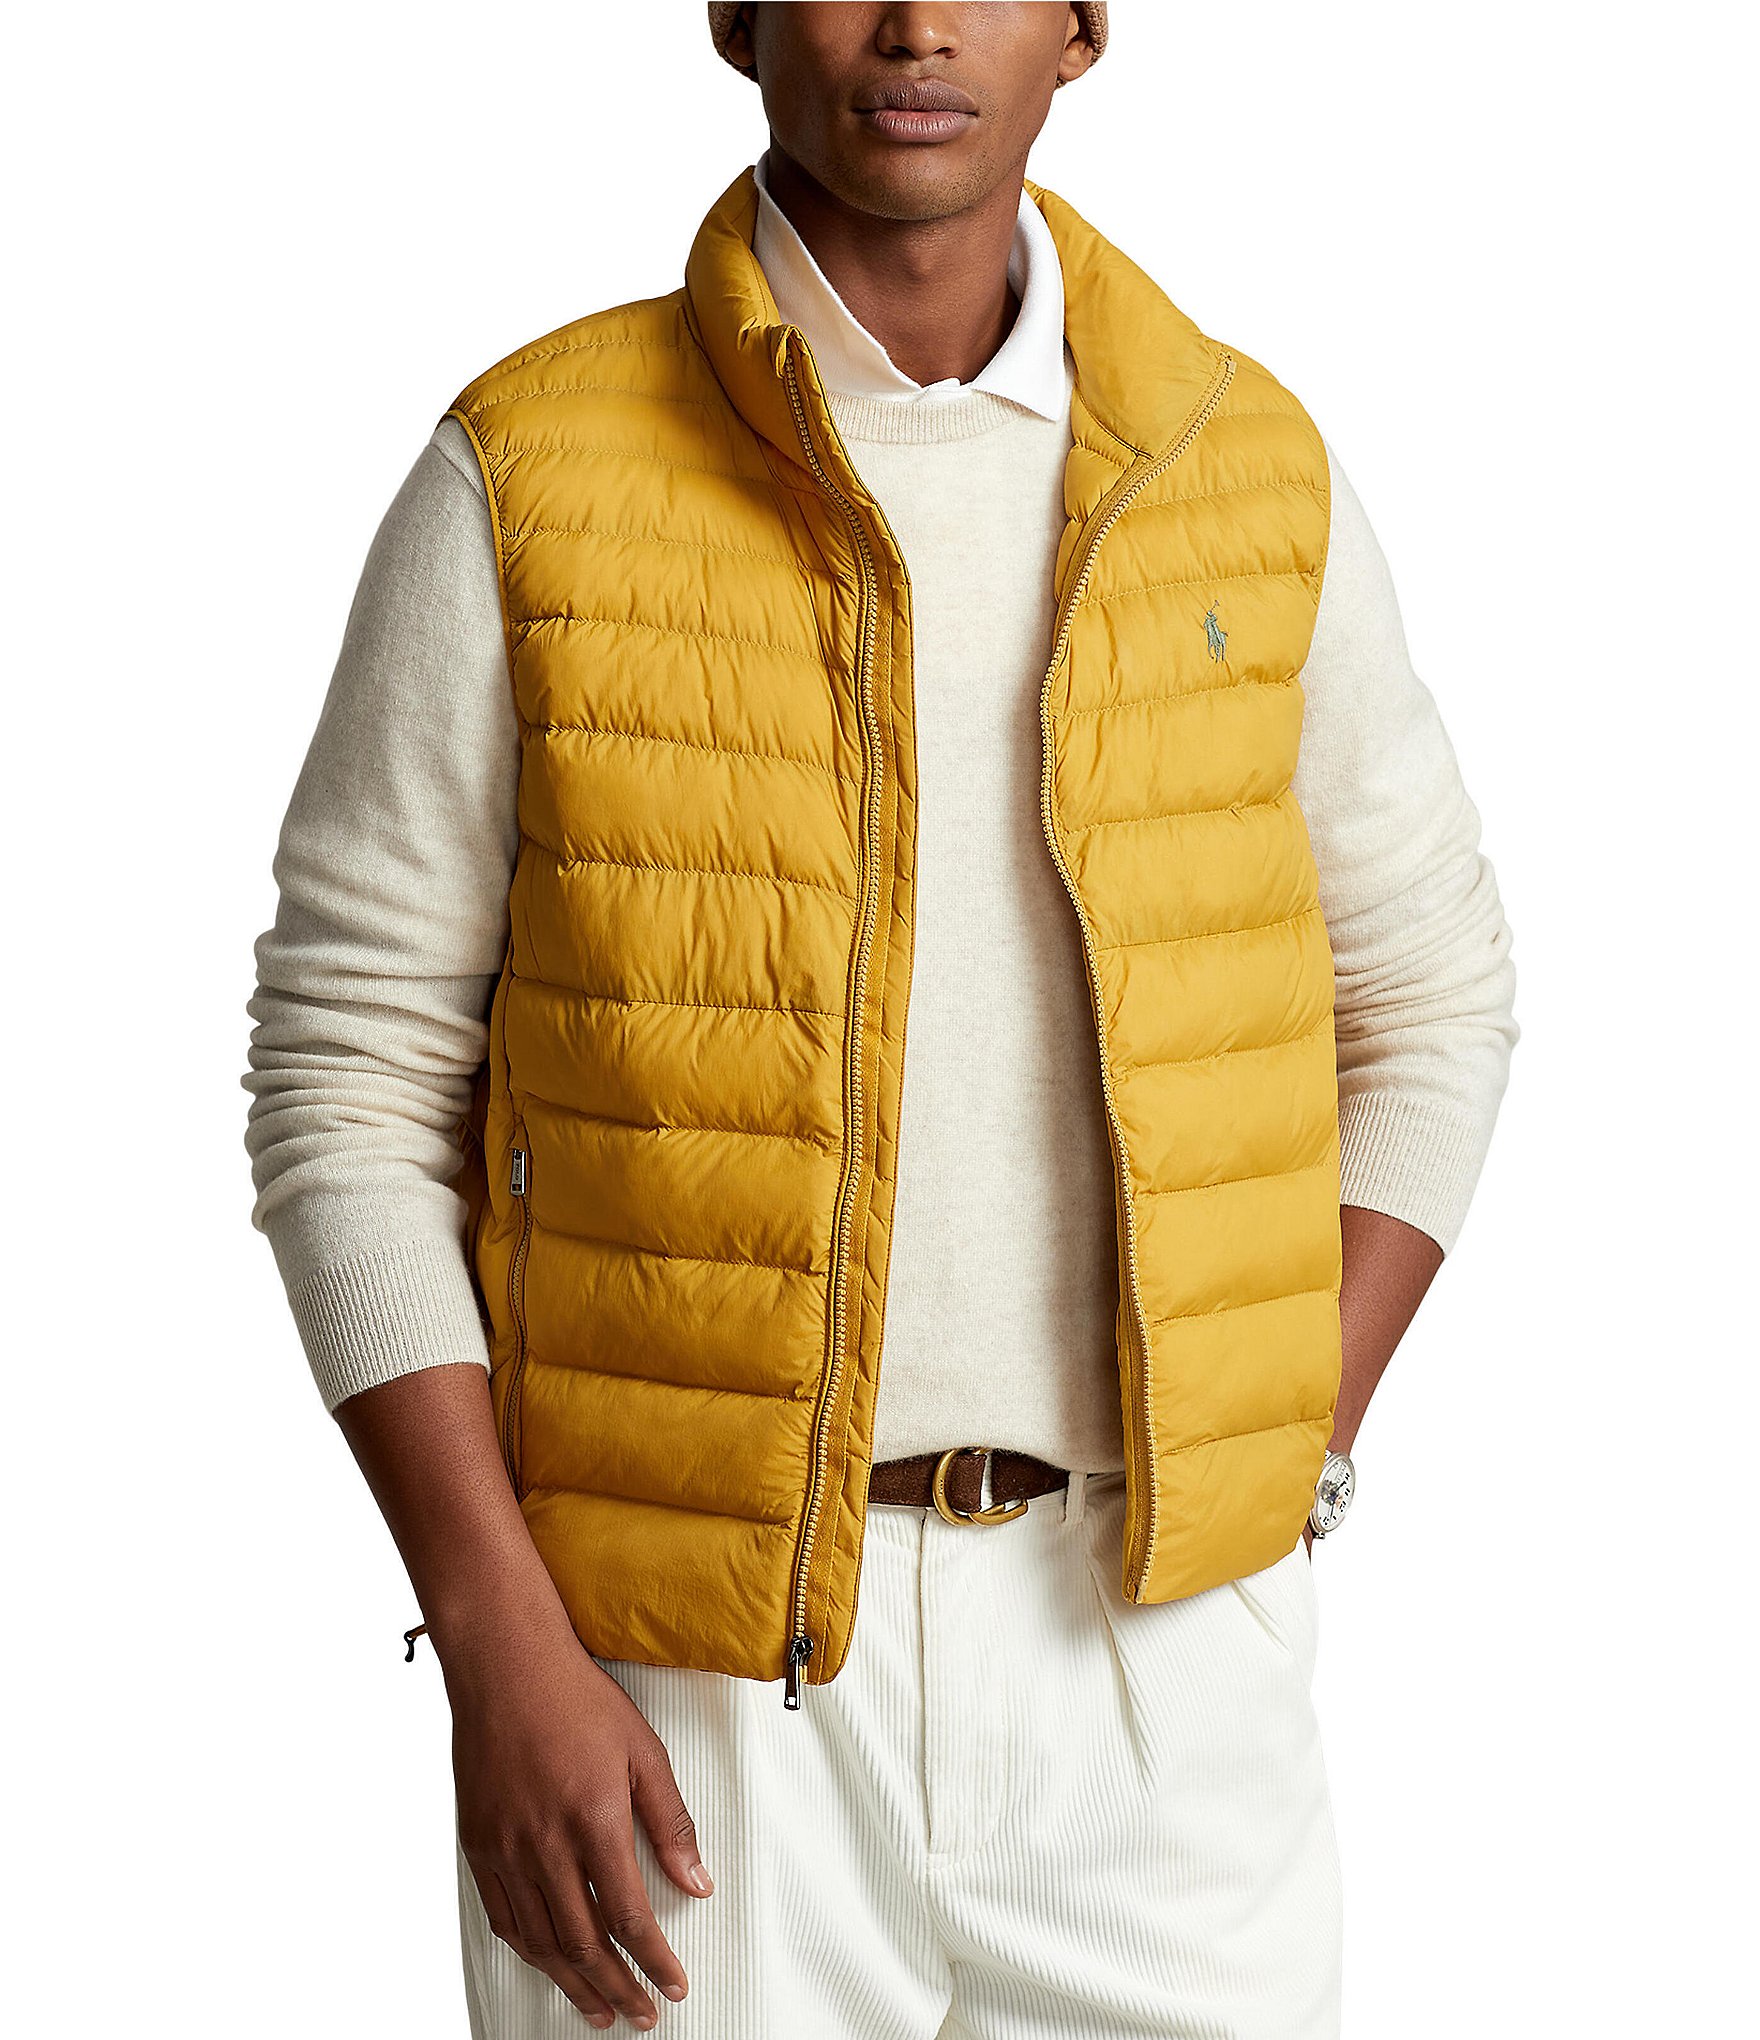 Polo Ralph Lauren Vest Cheapest Retailers, Save 67% | jlcatj.gob.mx